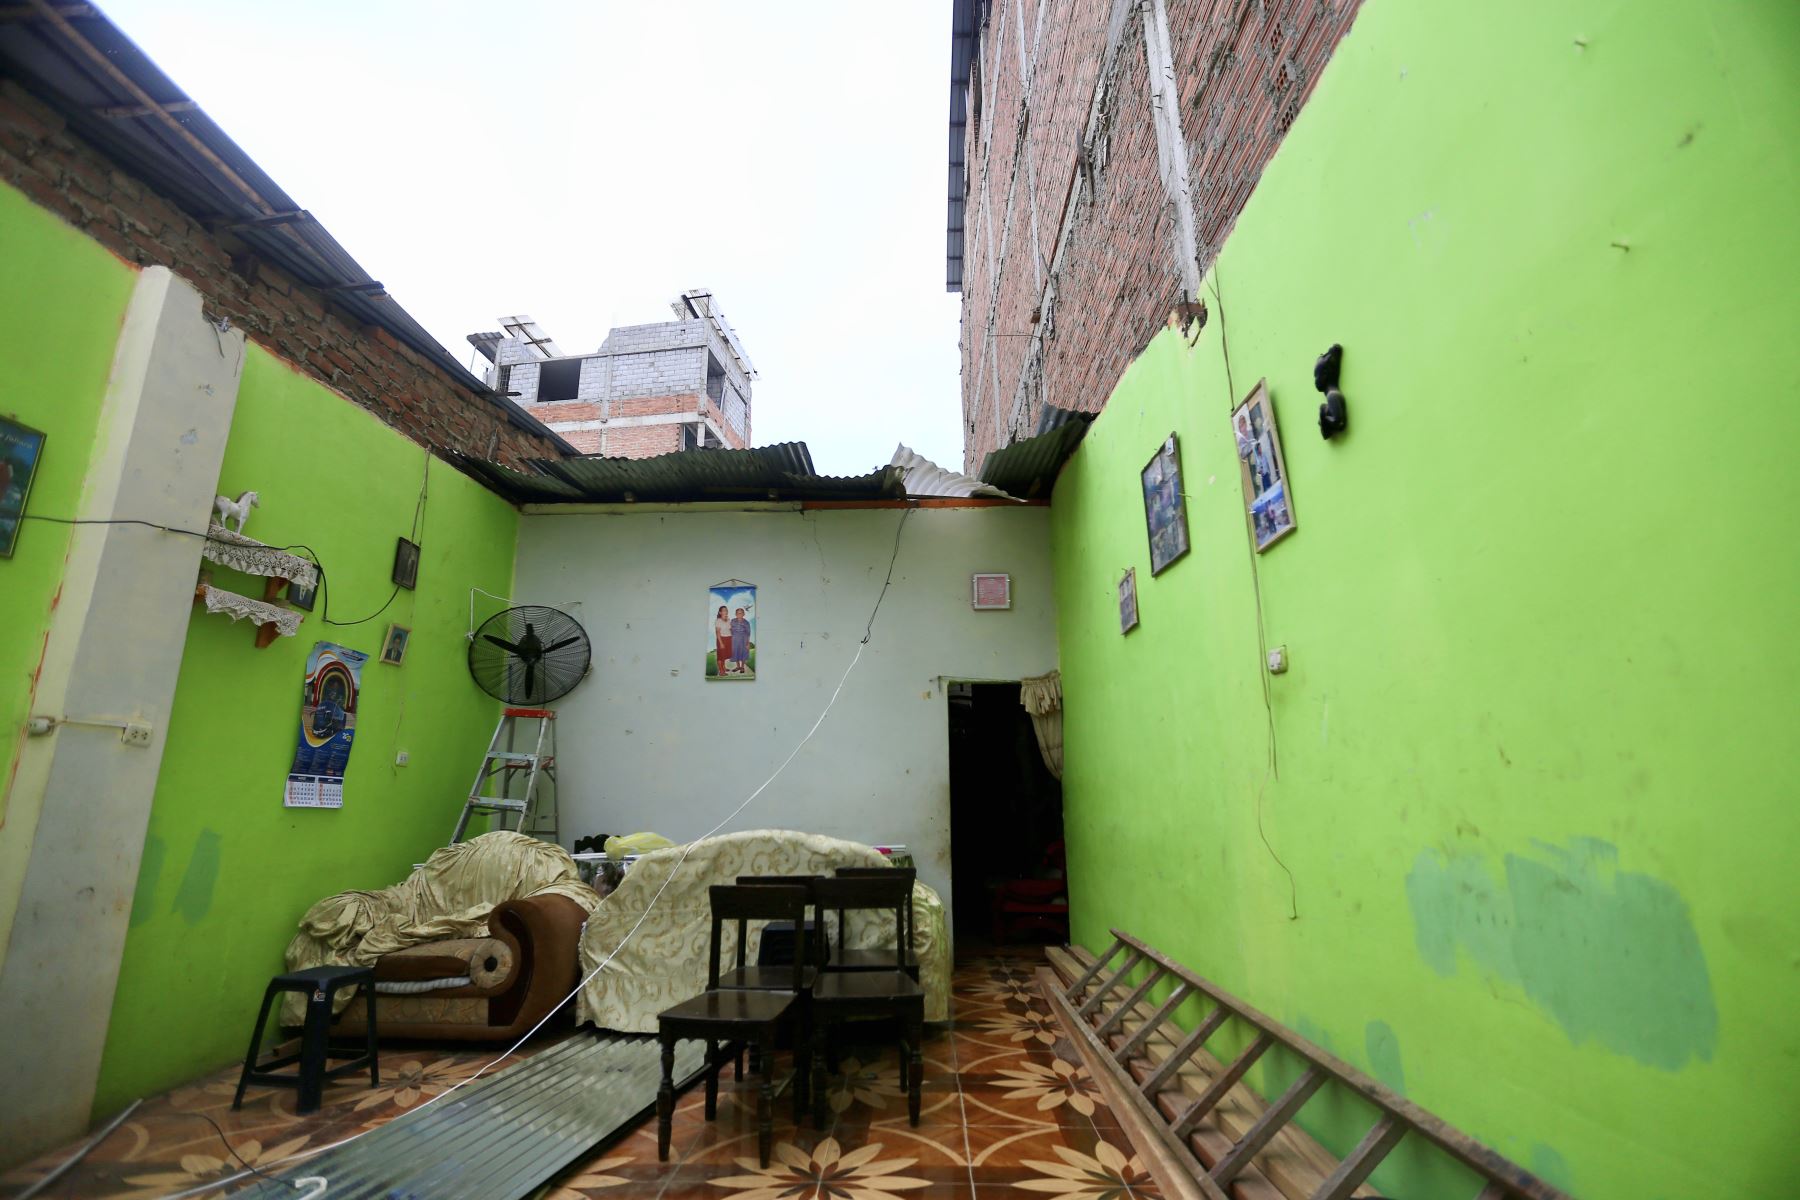 Sismo de magnitud 6.7 registrado en Tumbes dejo daños materiales, viviendas colapsadas, damnificados y una niña fallecida. Foto: ANDINA/Ricardo Cuba